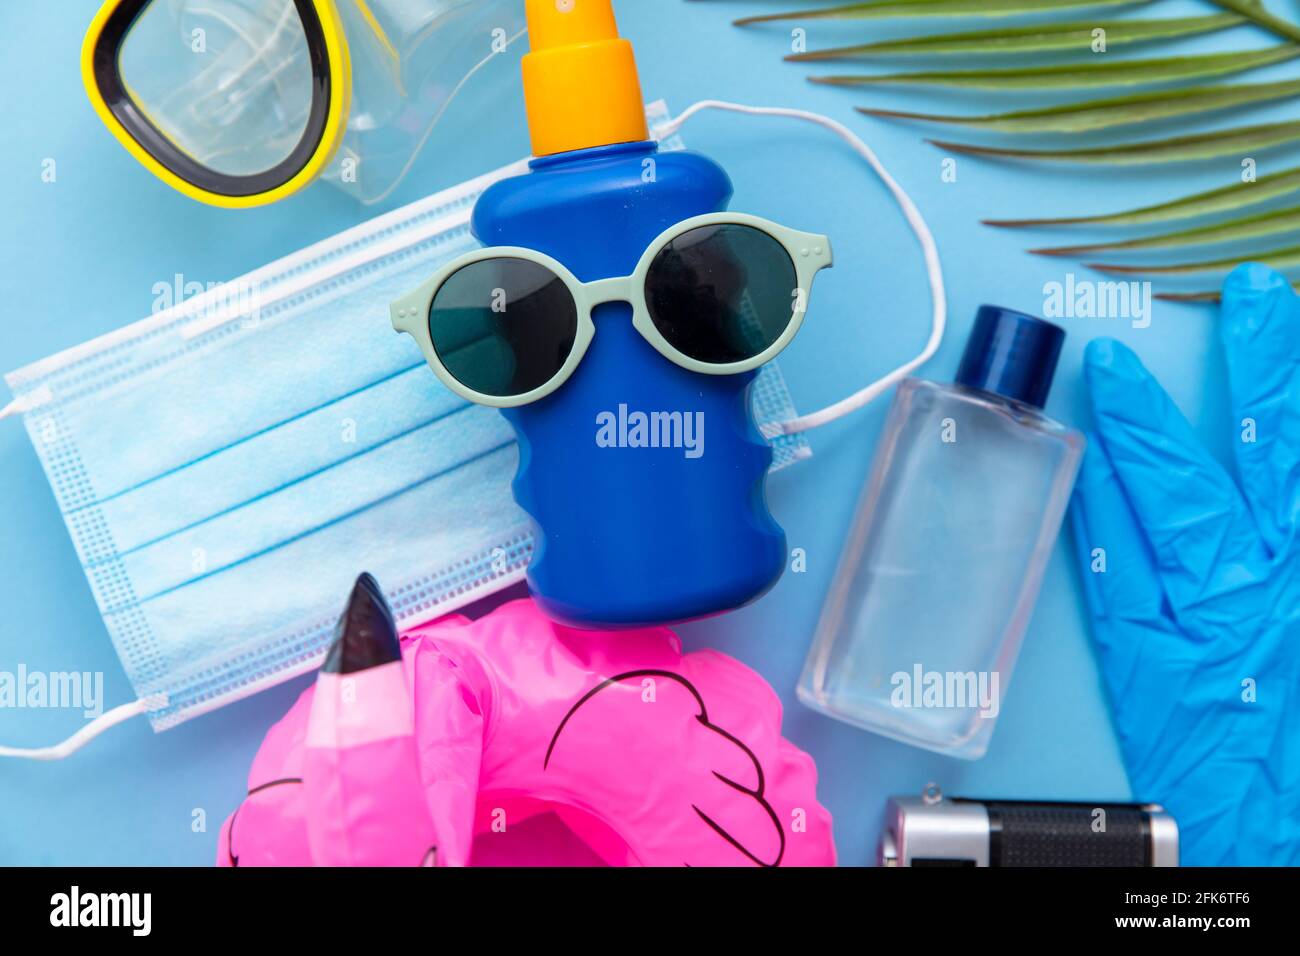 Sfondo vacanze estive con maschera protettiva per coronavirus e oggetti per le vacanze Foto Stock